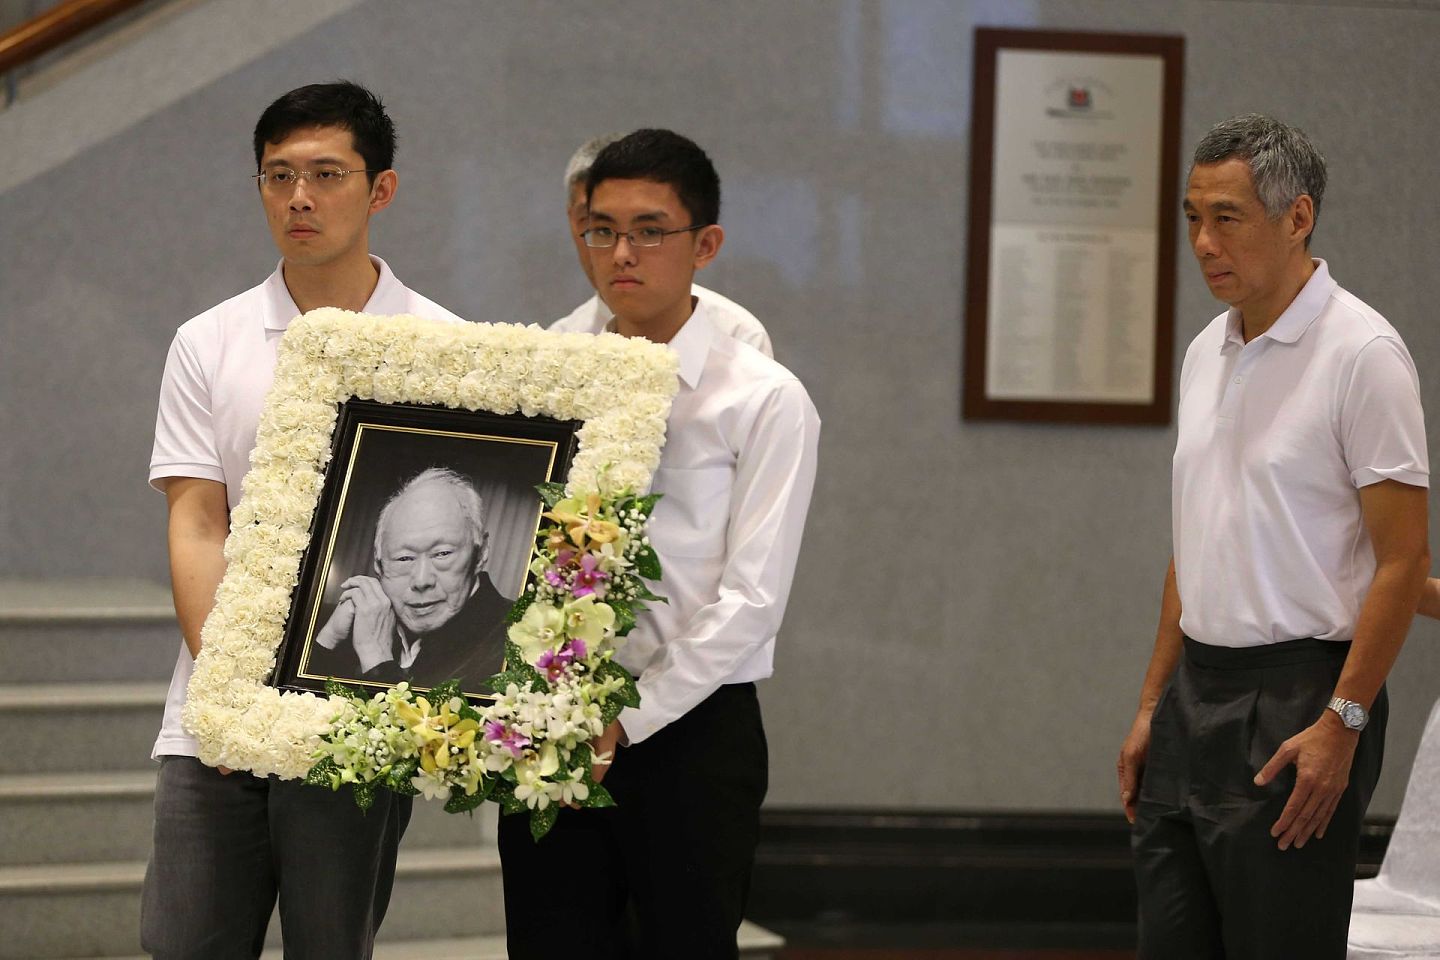 李显龙曾称父亲造就了自己，可见在政治生涯之中深受其影响。图为2015年李光耀的葬礼上，新加坡总理李显龙跟随在父亲遗像之后。（Getty)